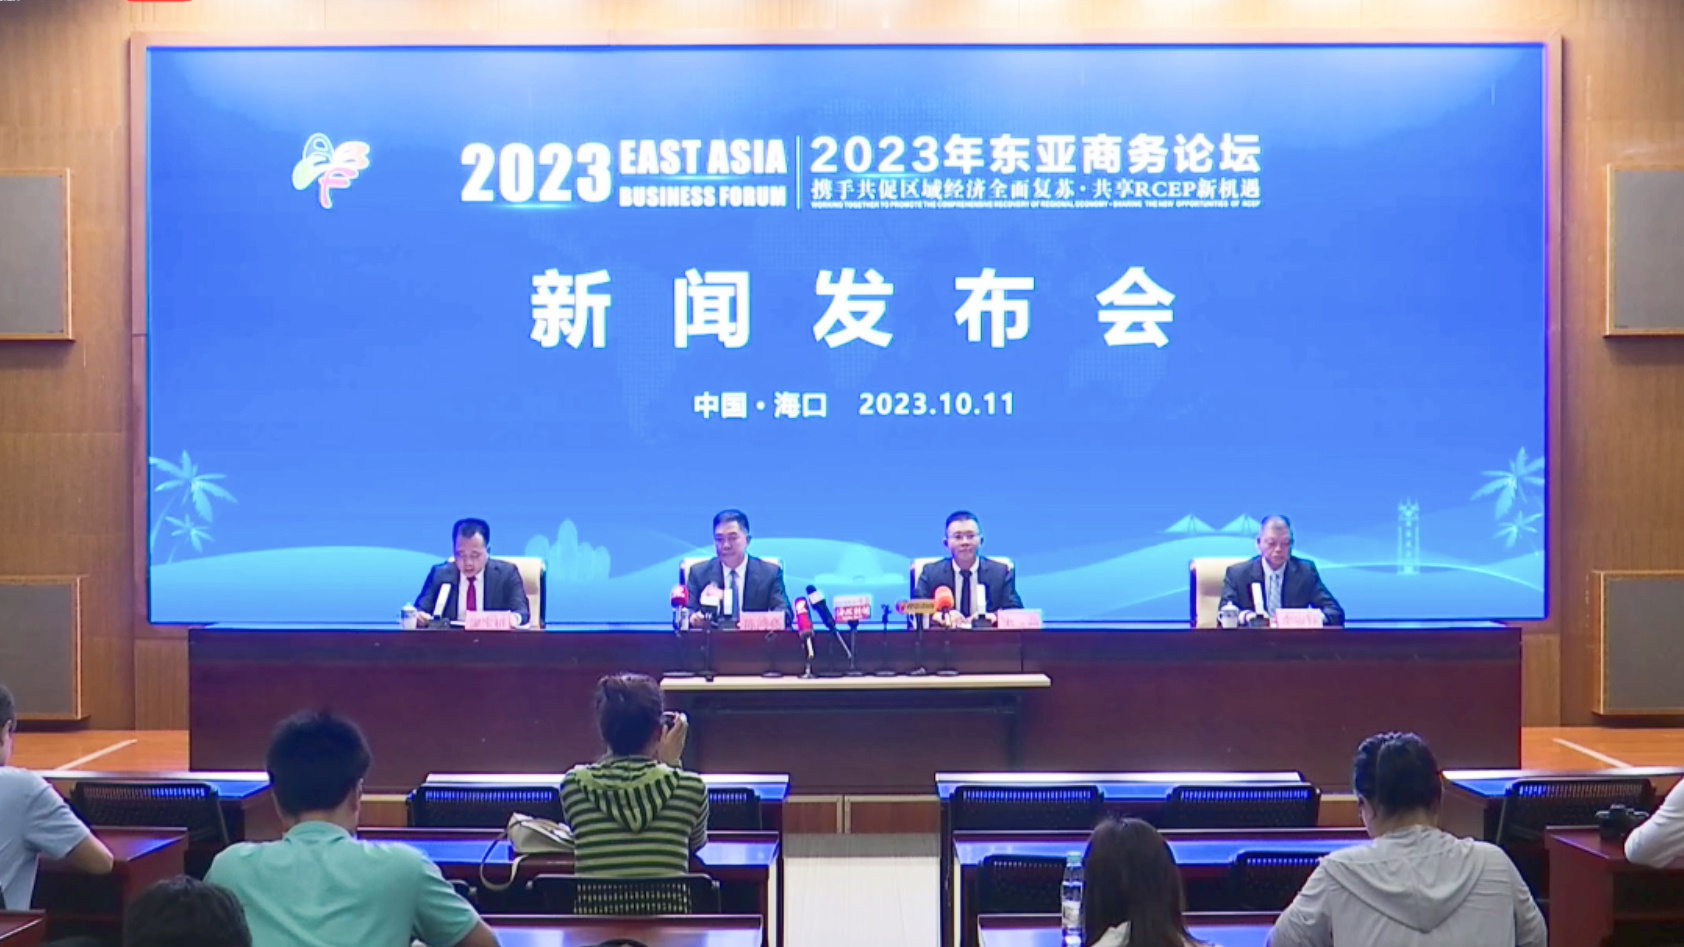 2023年东亚商务论坛将在海口举行